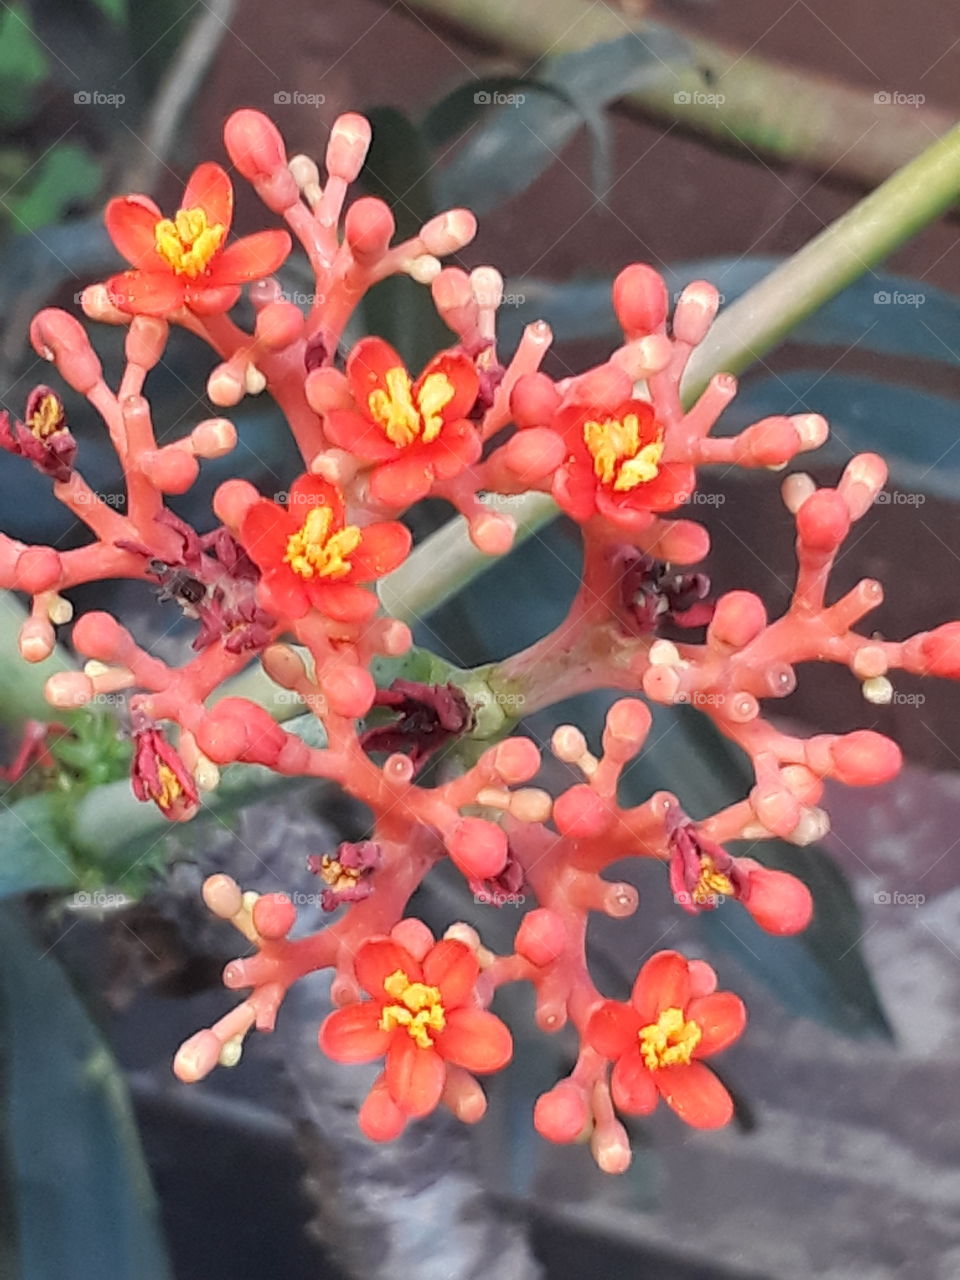 unique flowers